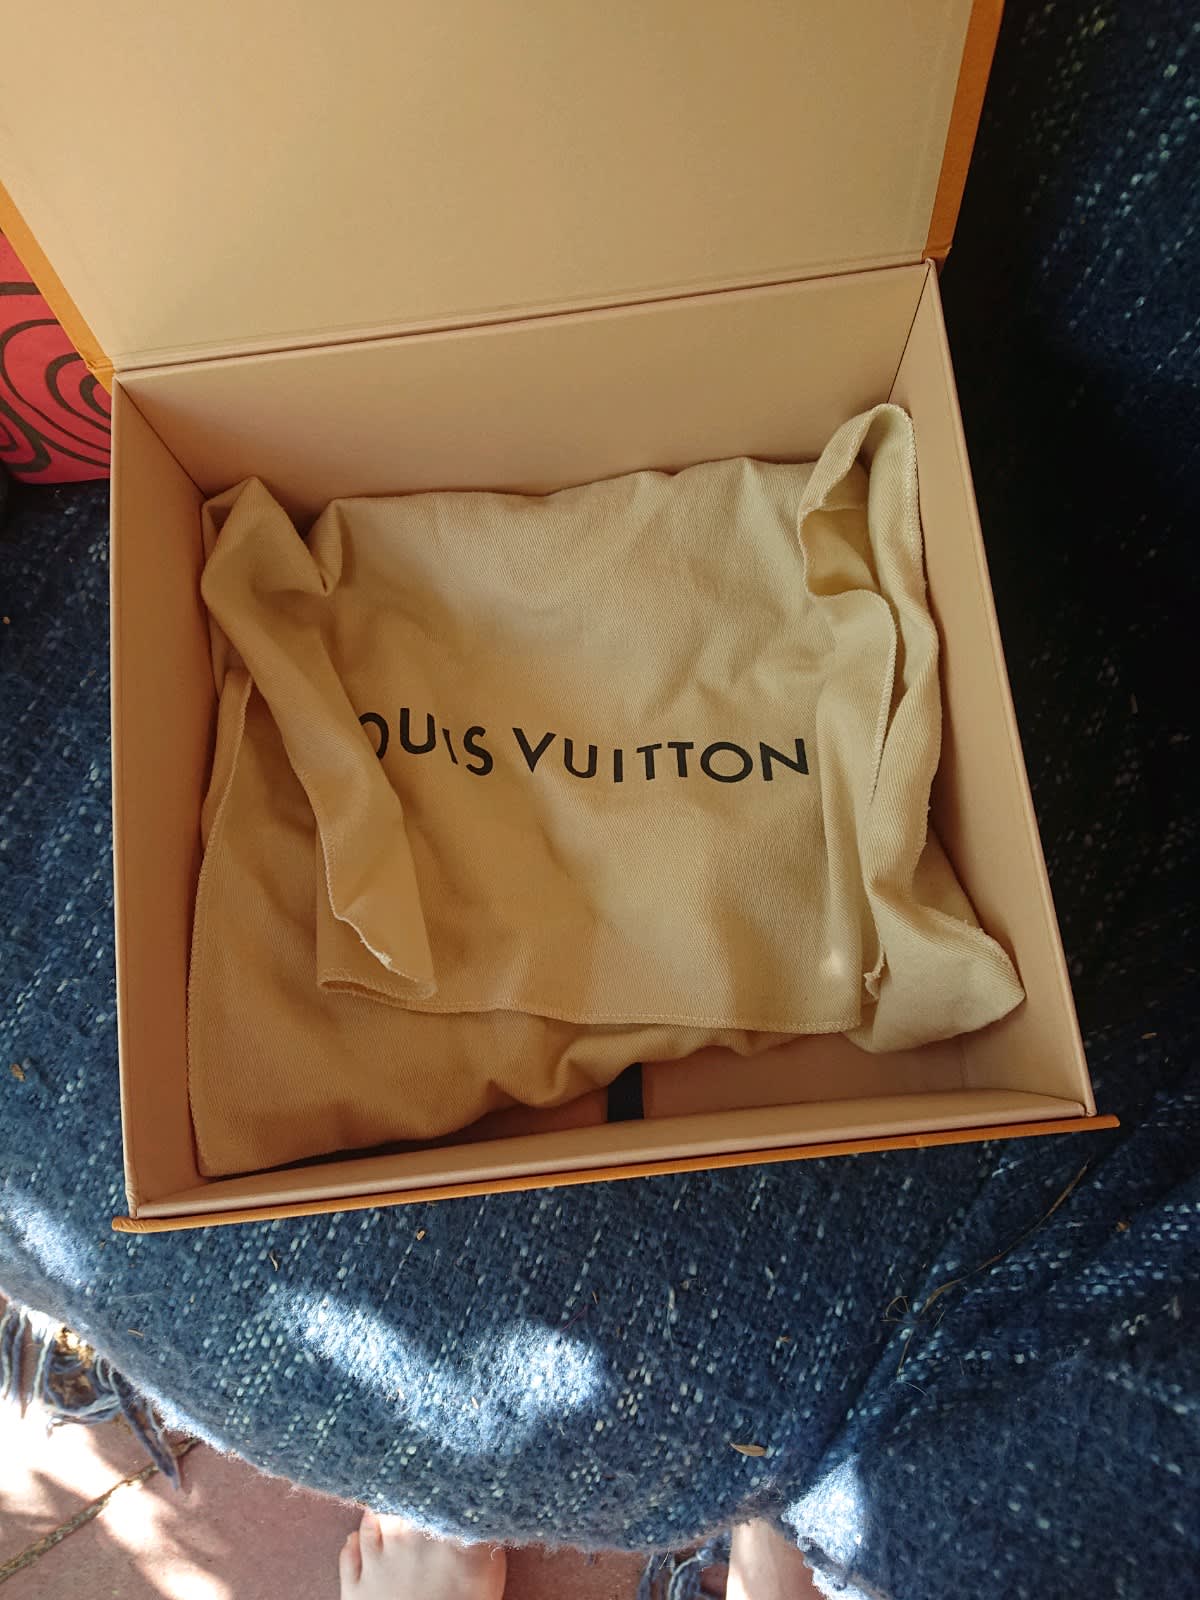 Louis Vuitton Flip Box- Box Only - small Size. 31 x 21 x 5.5cm